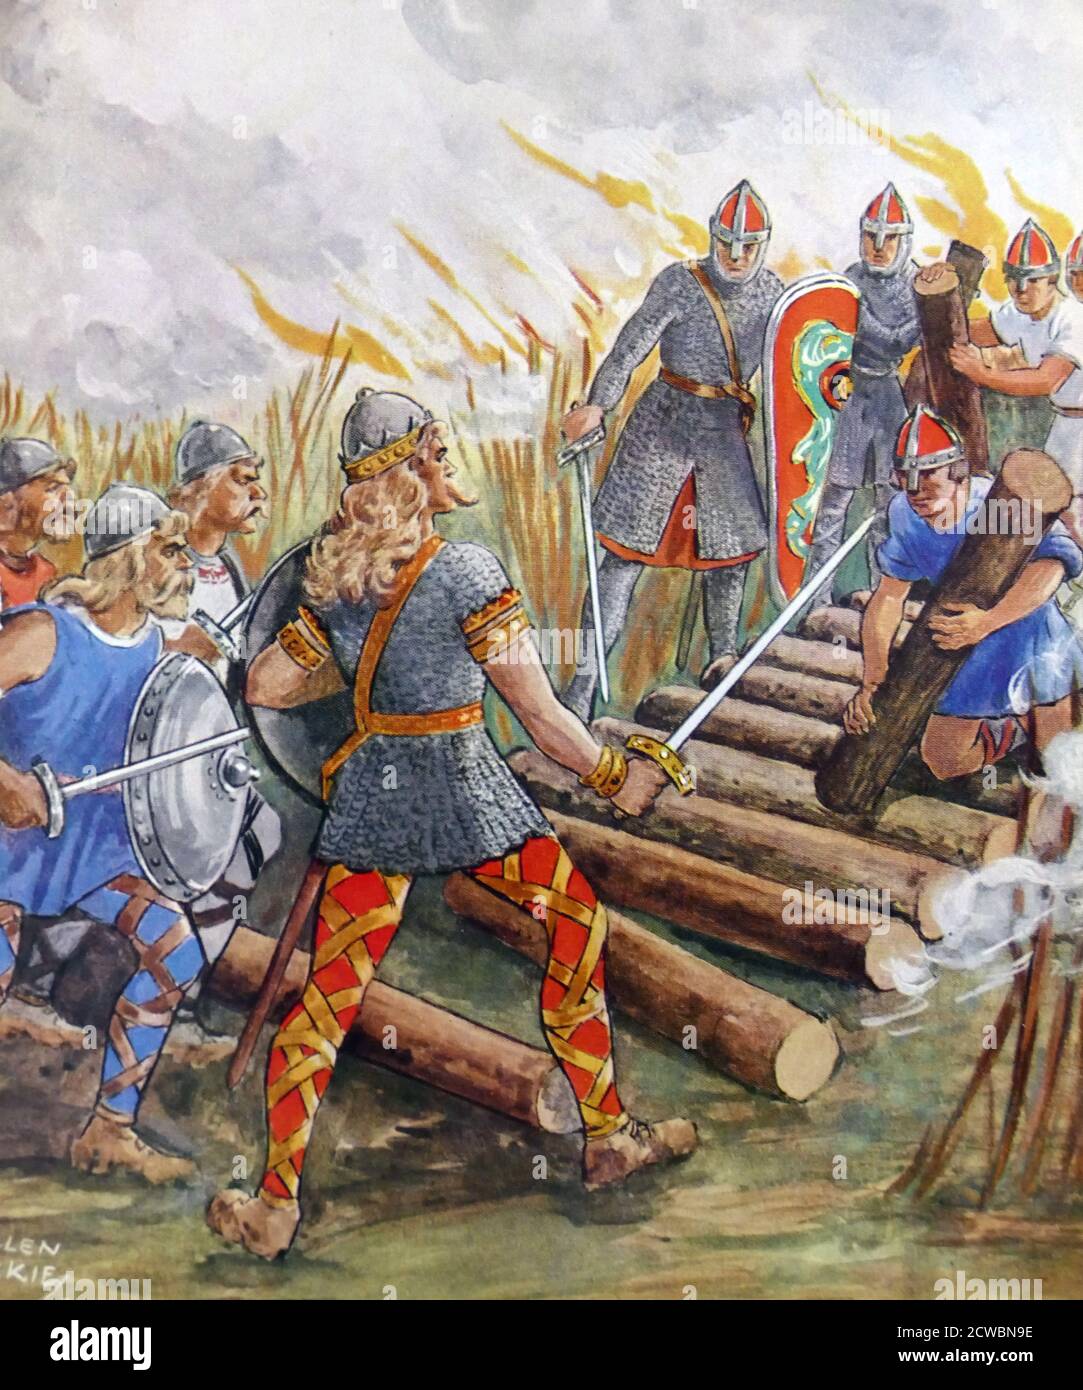 Illustrazione che raffigura la riattivazione di Hereward ((c.. 1035 - c. 1072), un nobile anglosassone e un capo della resistenza locale alla conquista normanna d'Inghilterra. La sua base, quando guidò la ribellione contro i governanti normanni, era l'Isola di Ely nell'Anglia orientale. Foto Stock